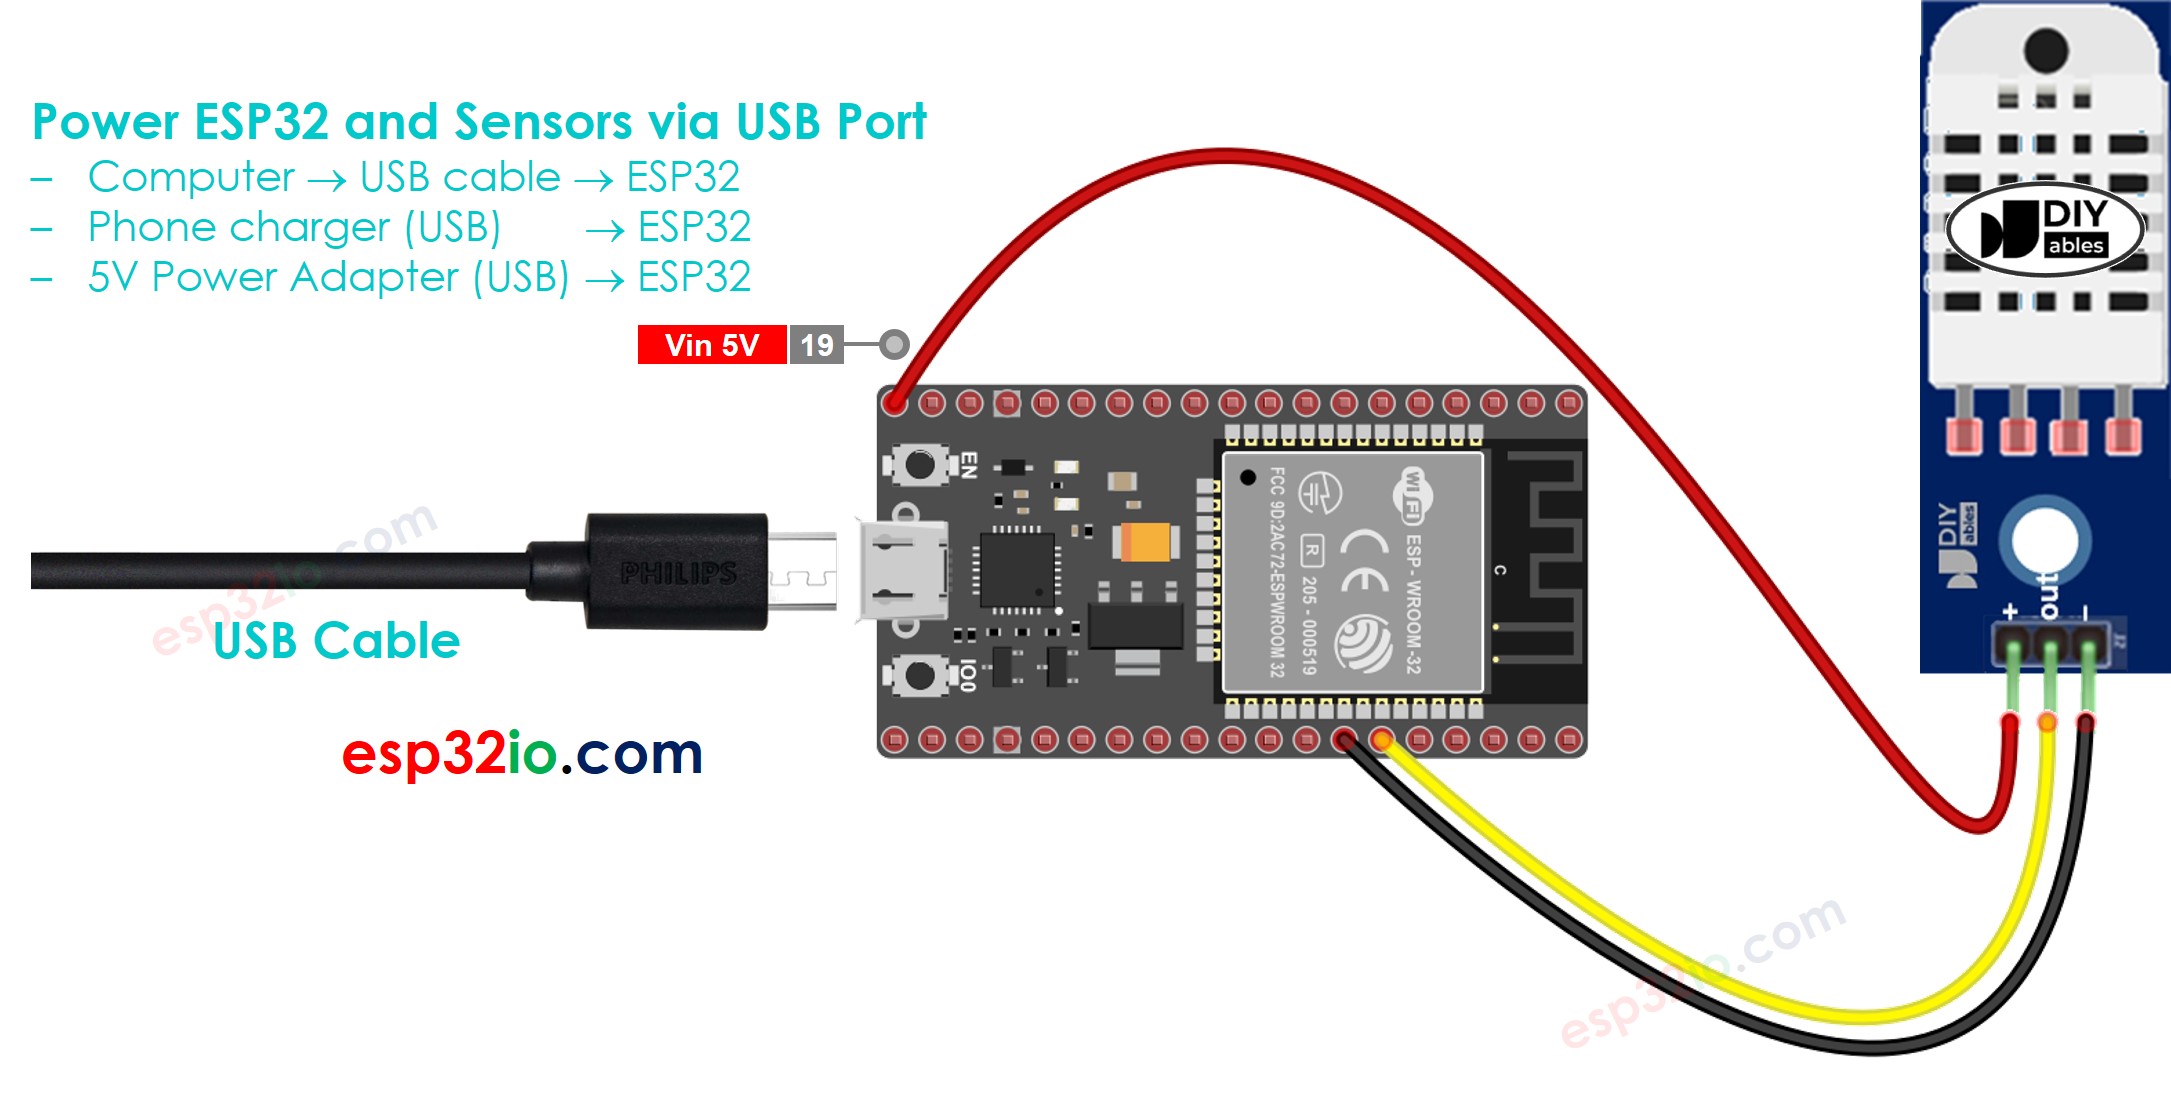 how to power ESP32 and sensors via USB port